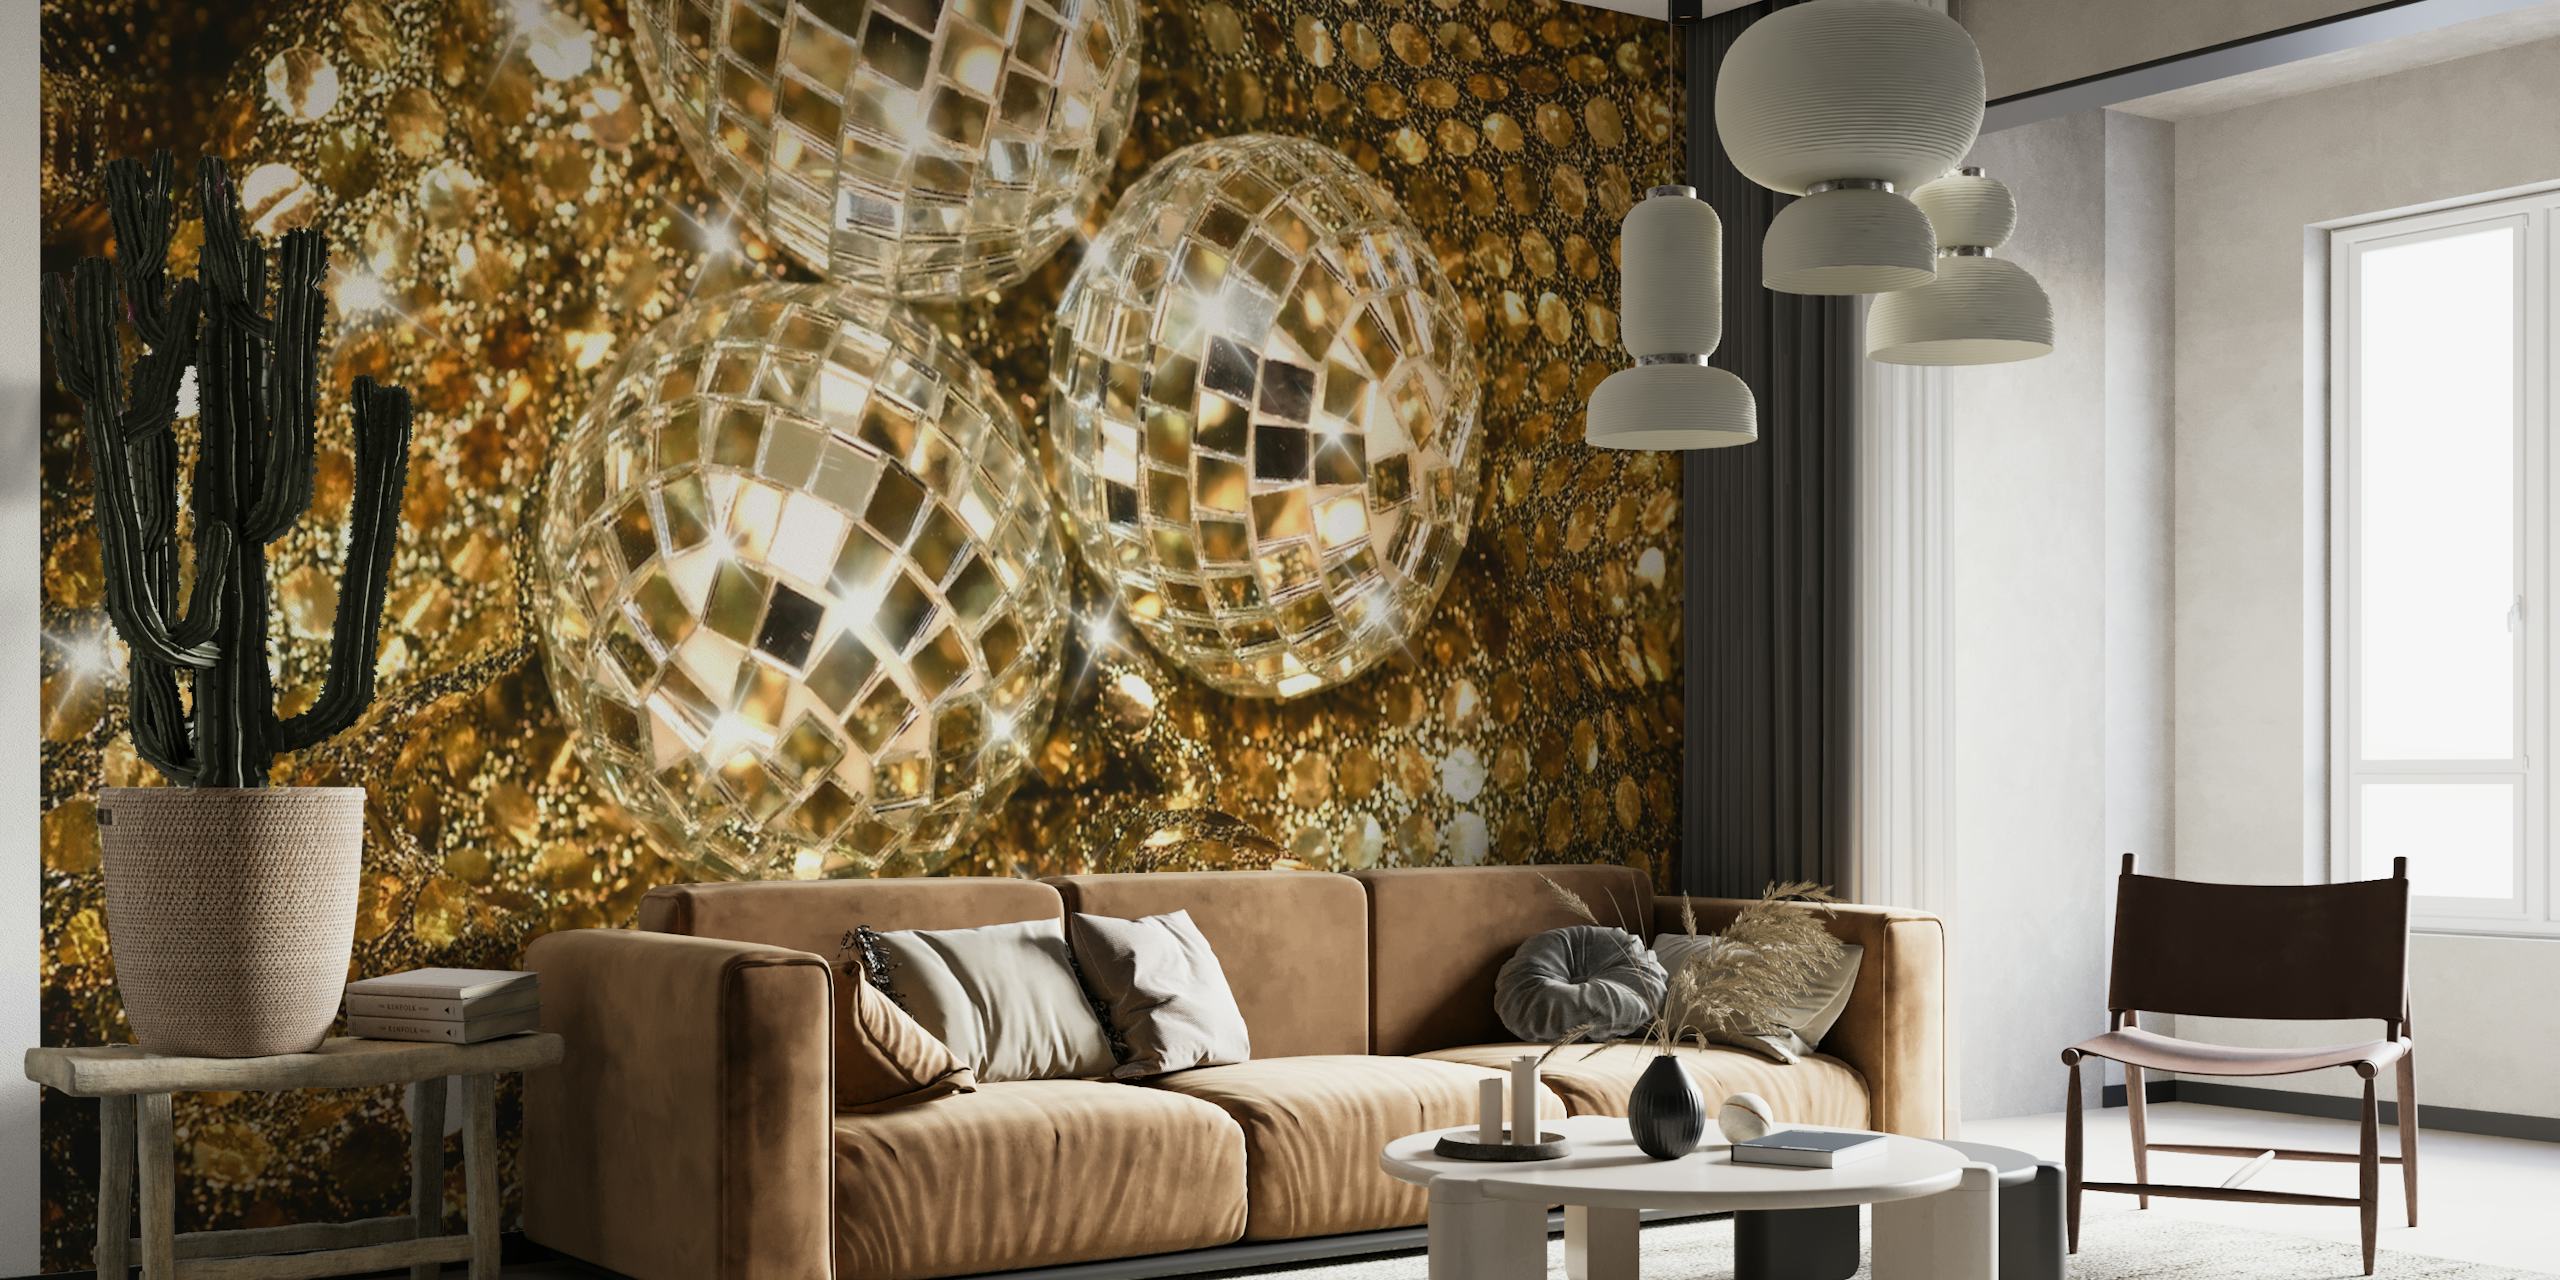 Mural de bolas de discoteca cintilantes com fundo dourado cintilante